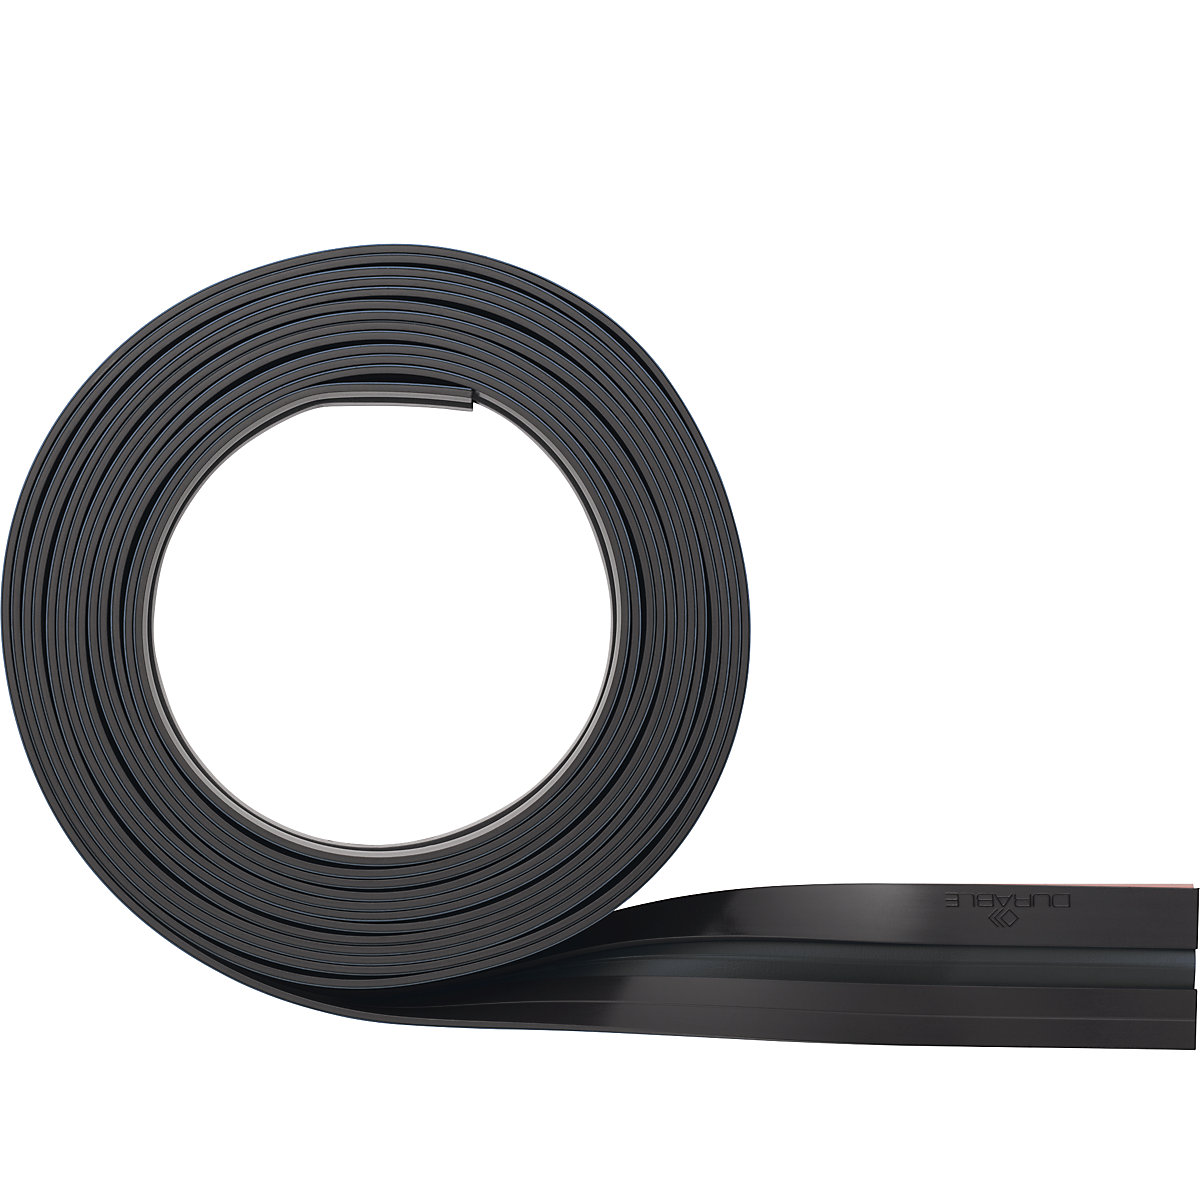 DURAFIX® ROLL samoljepljiva magnetna letvica – DURABLE, 5 m na roli, pak. 2 kom., u crnoj boji-9